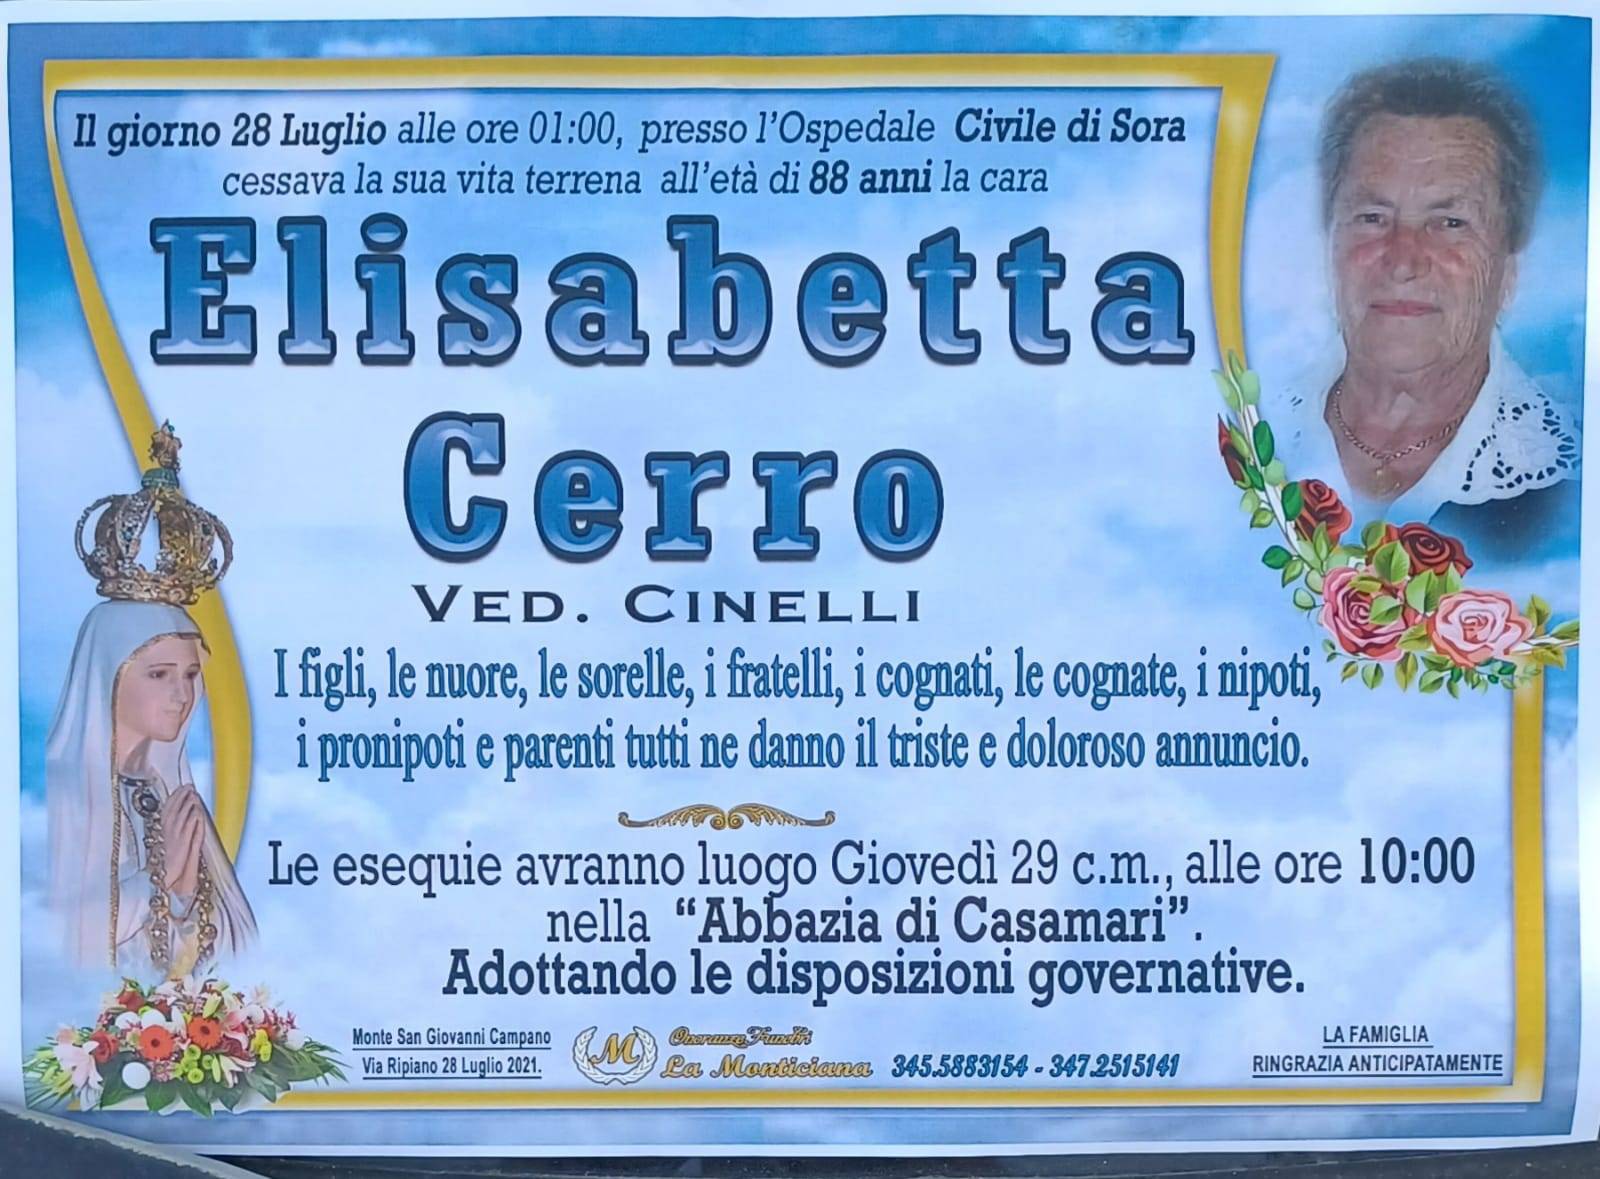 Elisabetta Cerro